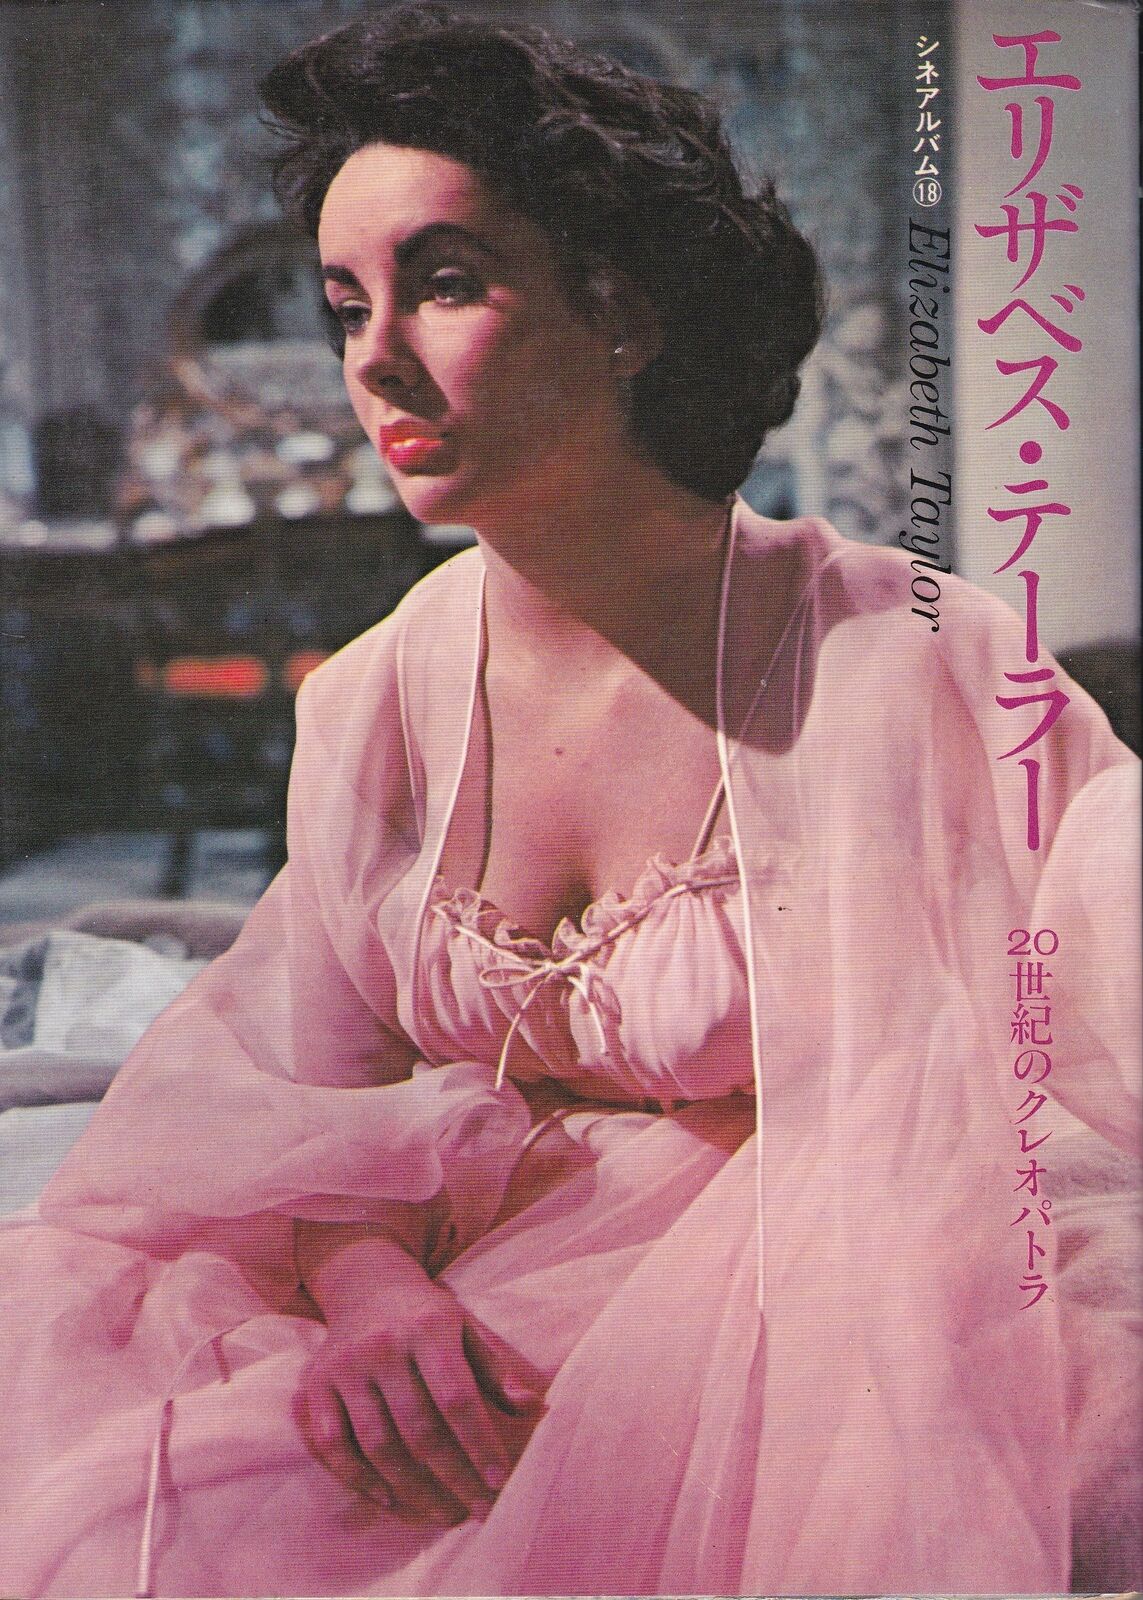 Elizabeth Taylor Japanese Photo Book 1973 VTG Cine album 18 LIZ Vintage OOP Rare